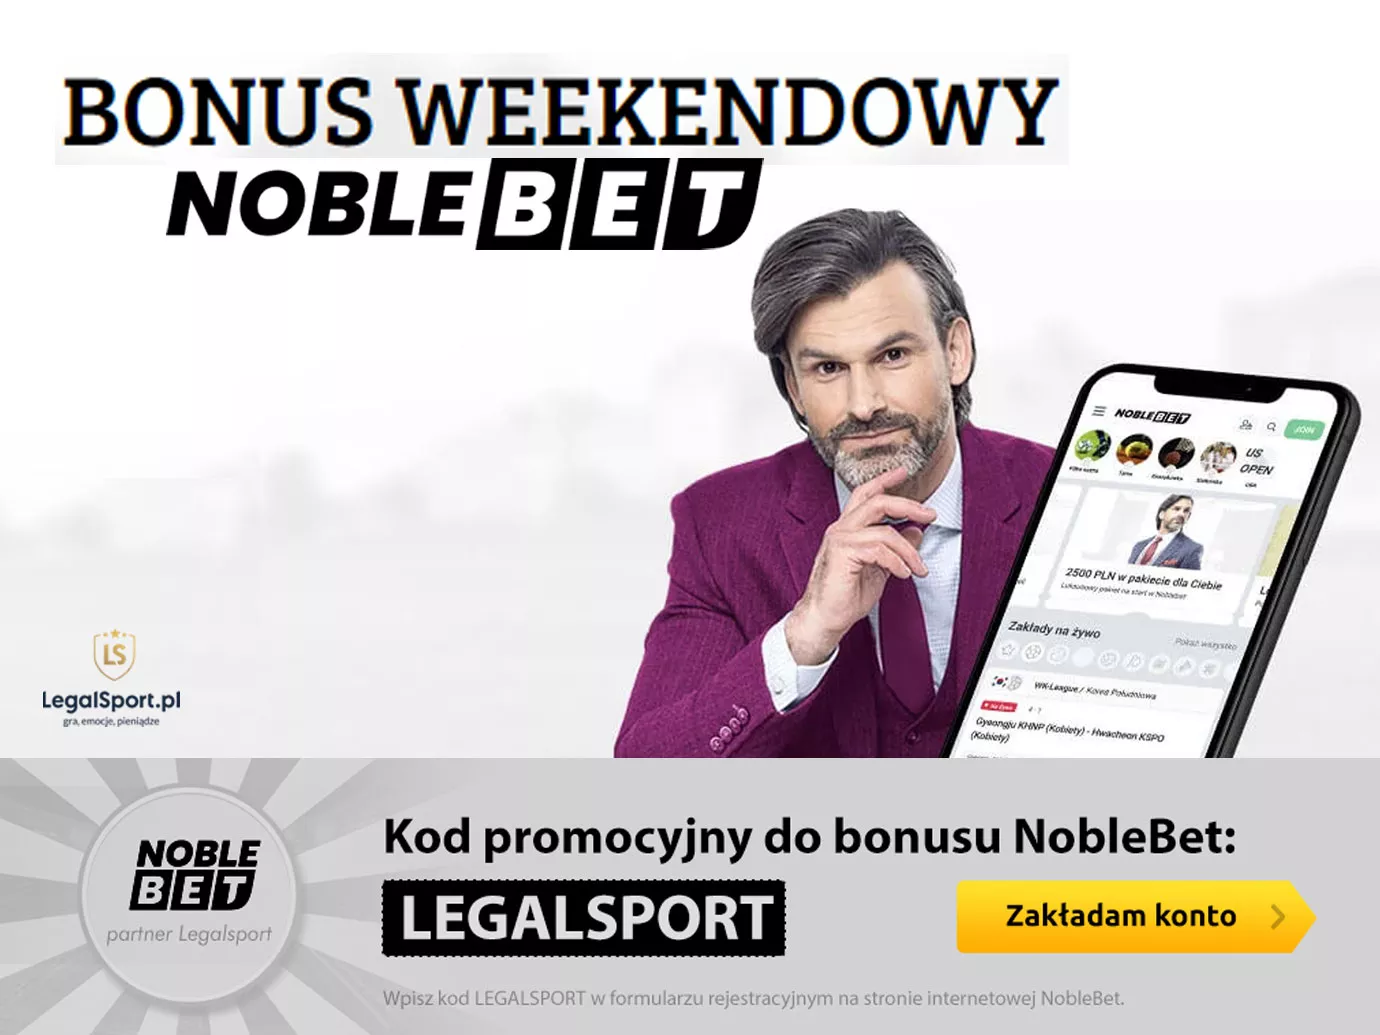 Weekendowy bonus 200 PLN w Noblebet